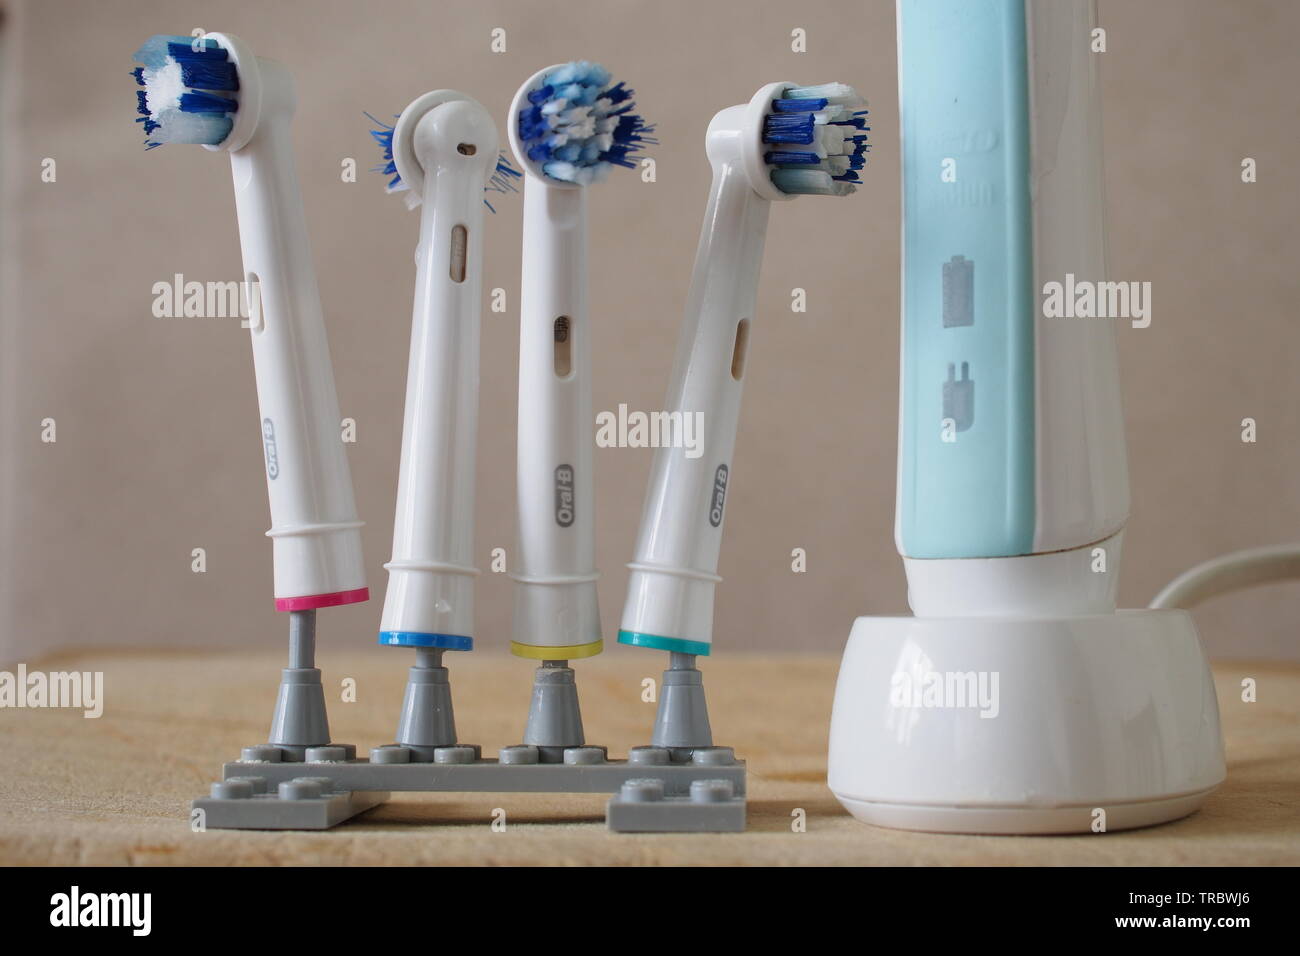 Vier gut verwendet elektrische Zahnbürste Köpfe auf ein Lego stand, neben  einem Braun elektrische Zahnbürste auf die Drahtlose wiederaufladbare Base  Stockfotografie - Alamy